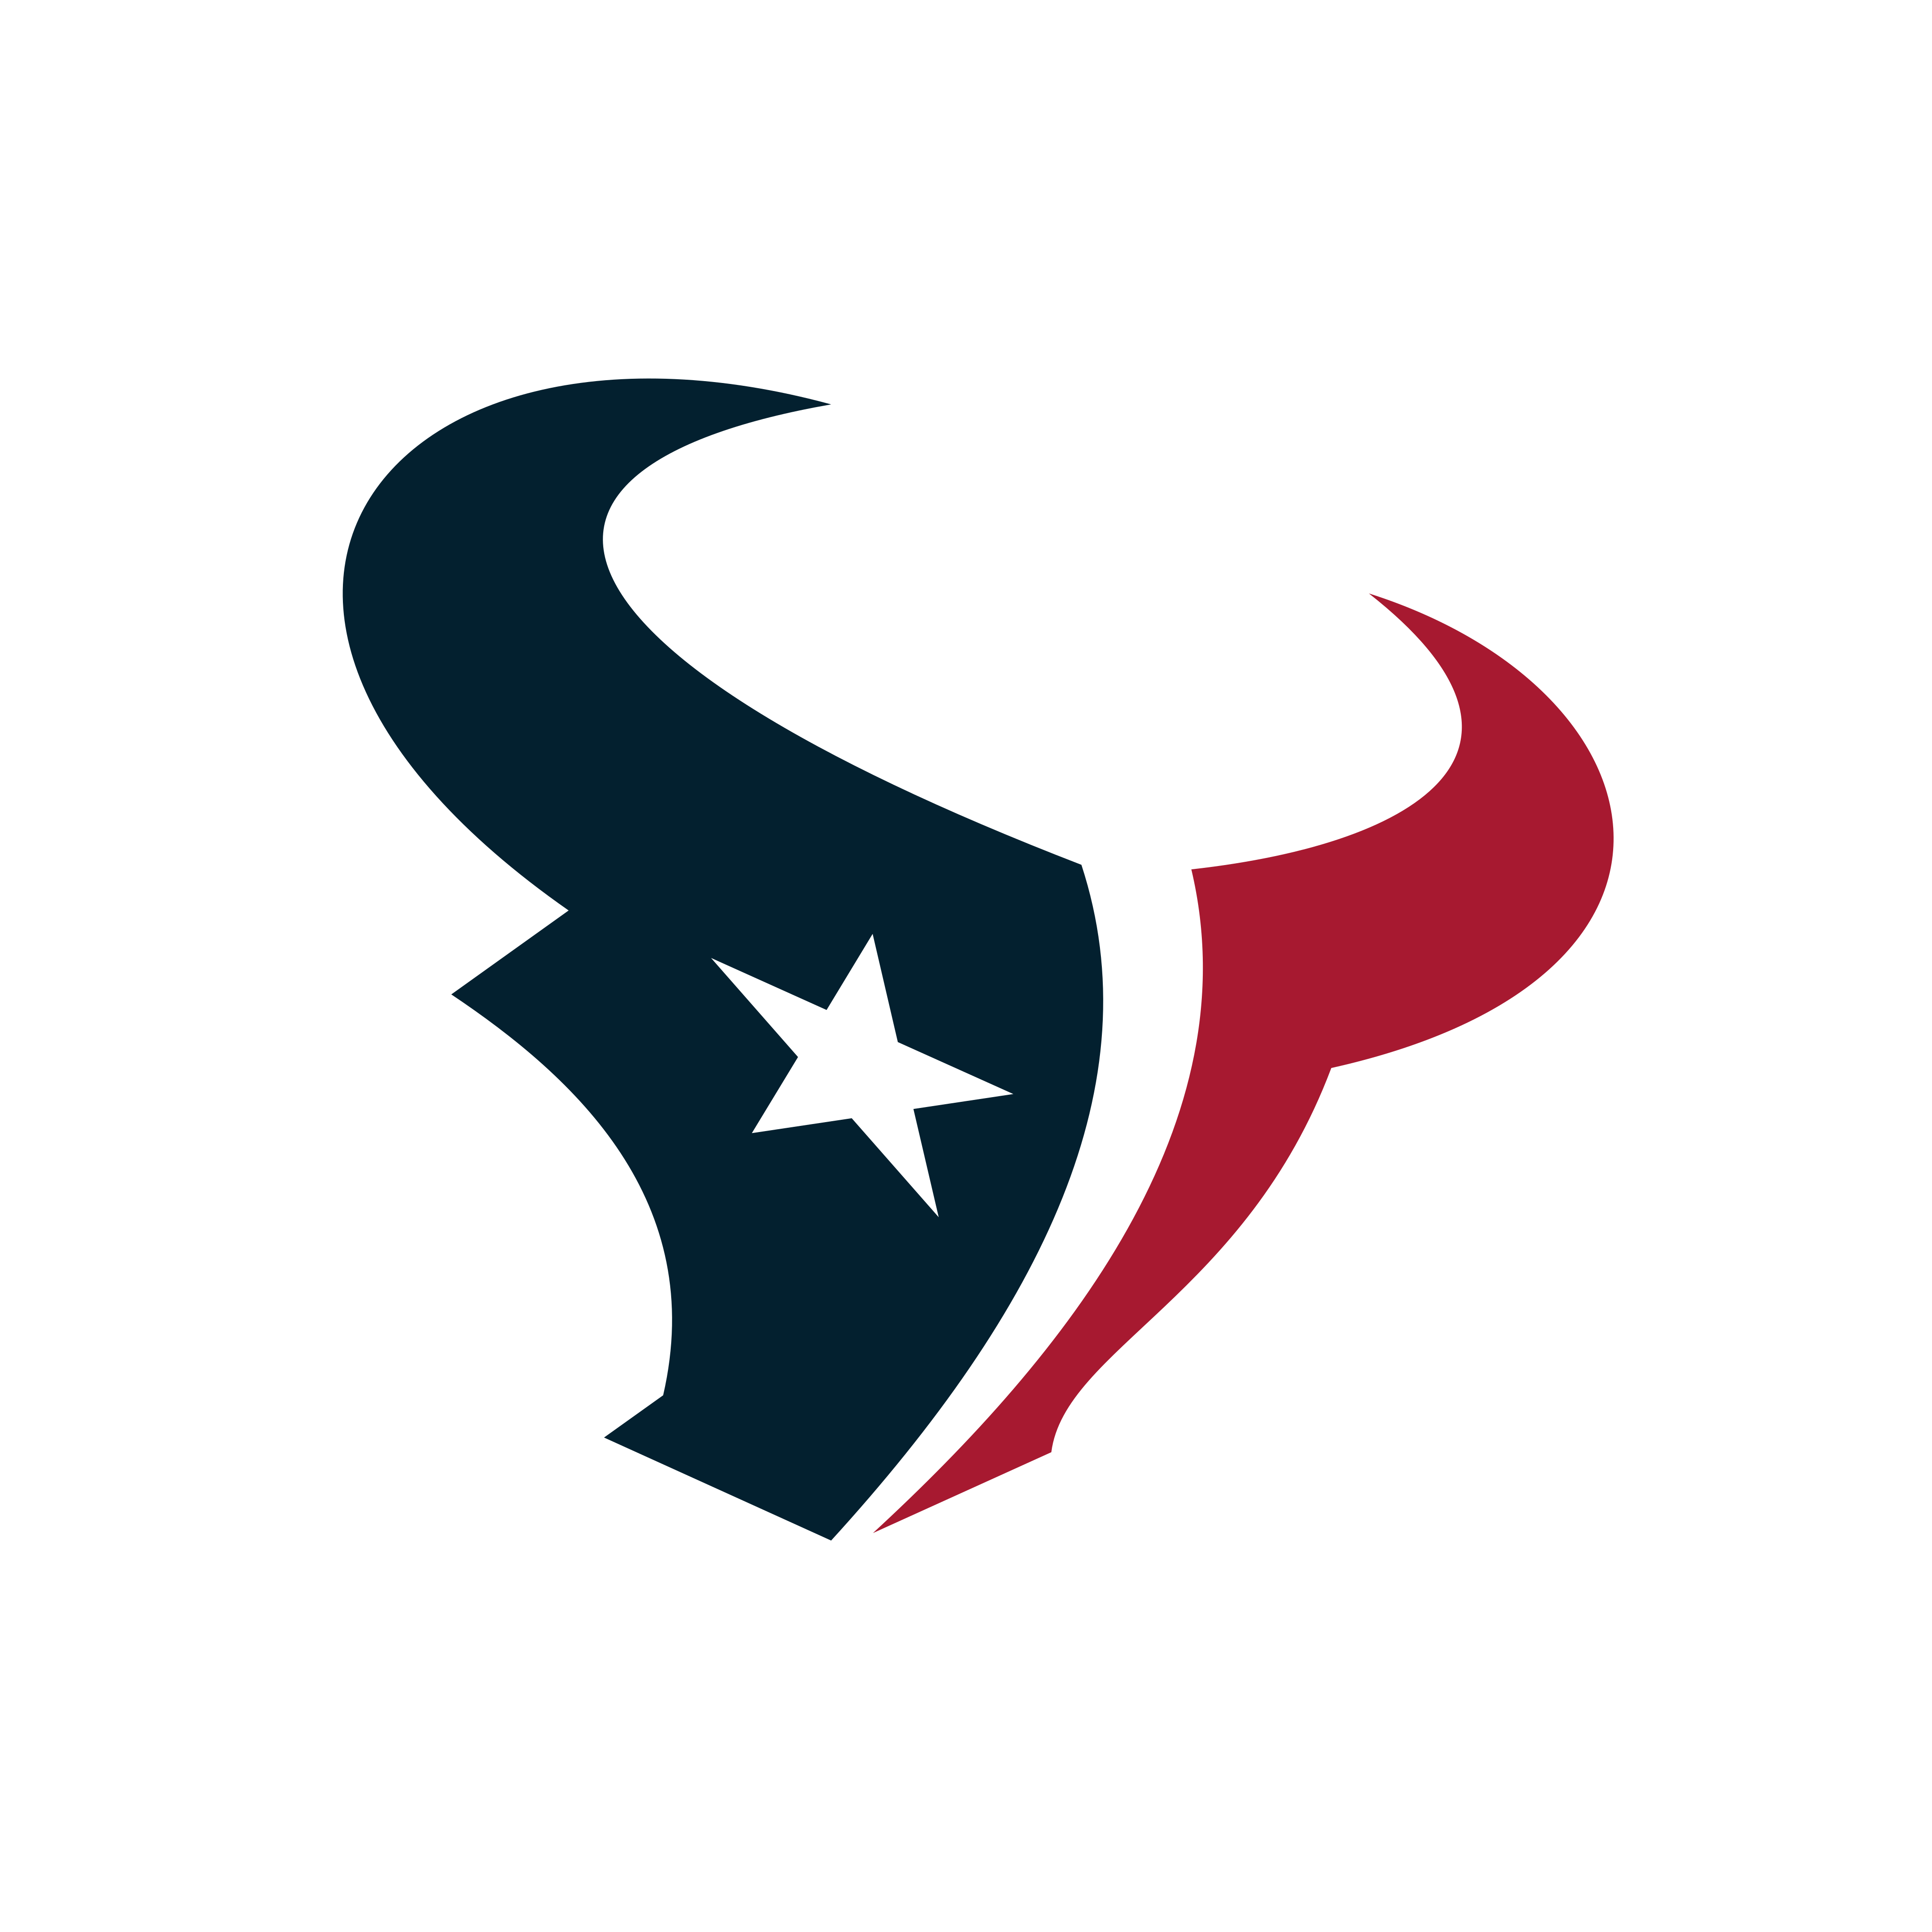 houston texans logo 0 - Houston Texans Logo